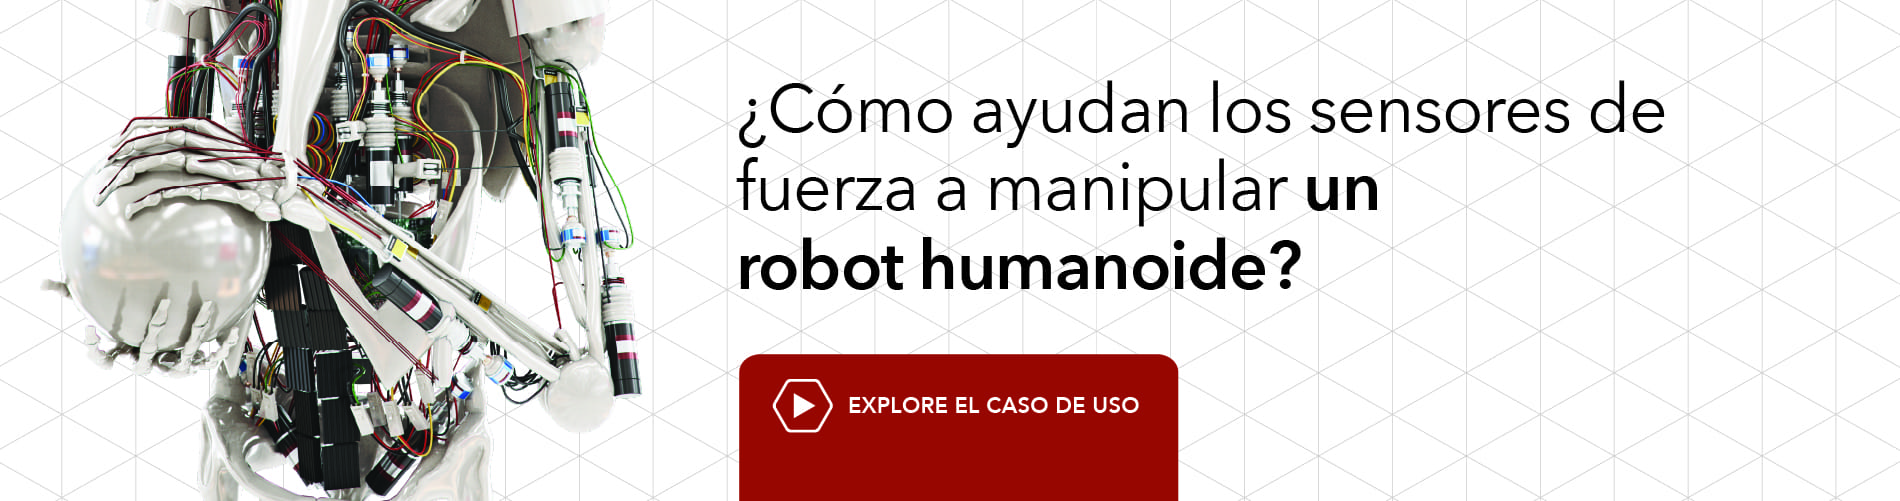 ¿Cómo ayudan los sensores de fuerza a manipular un robot humanoide? Explore el caso de uso